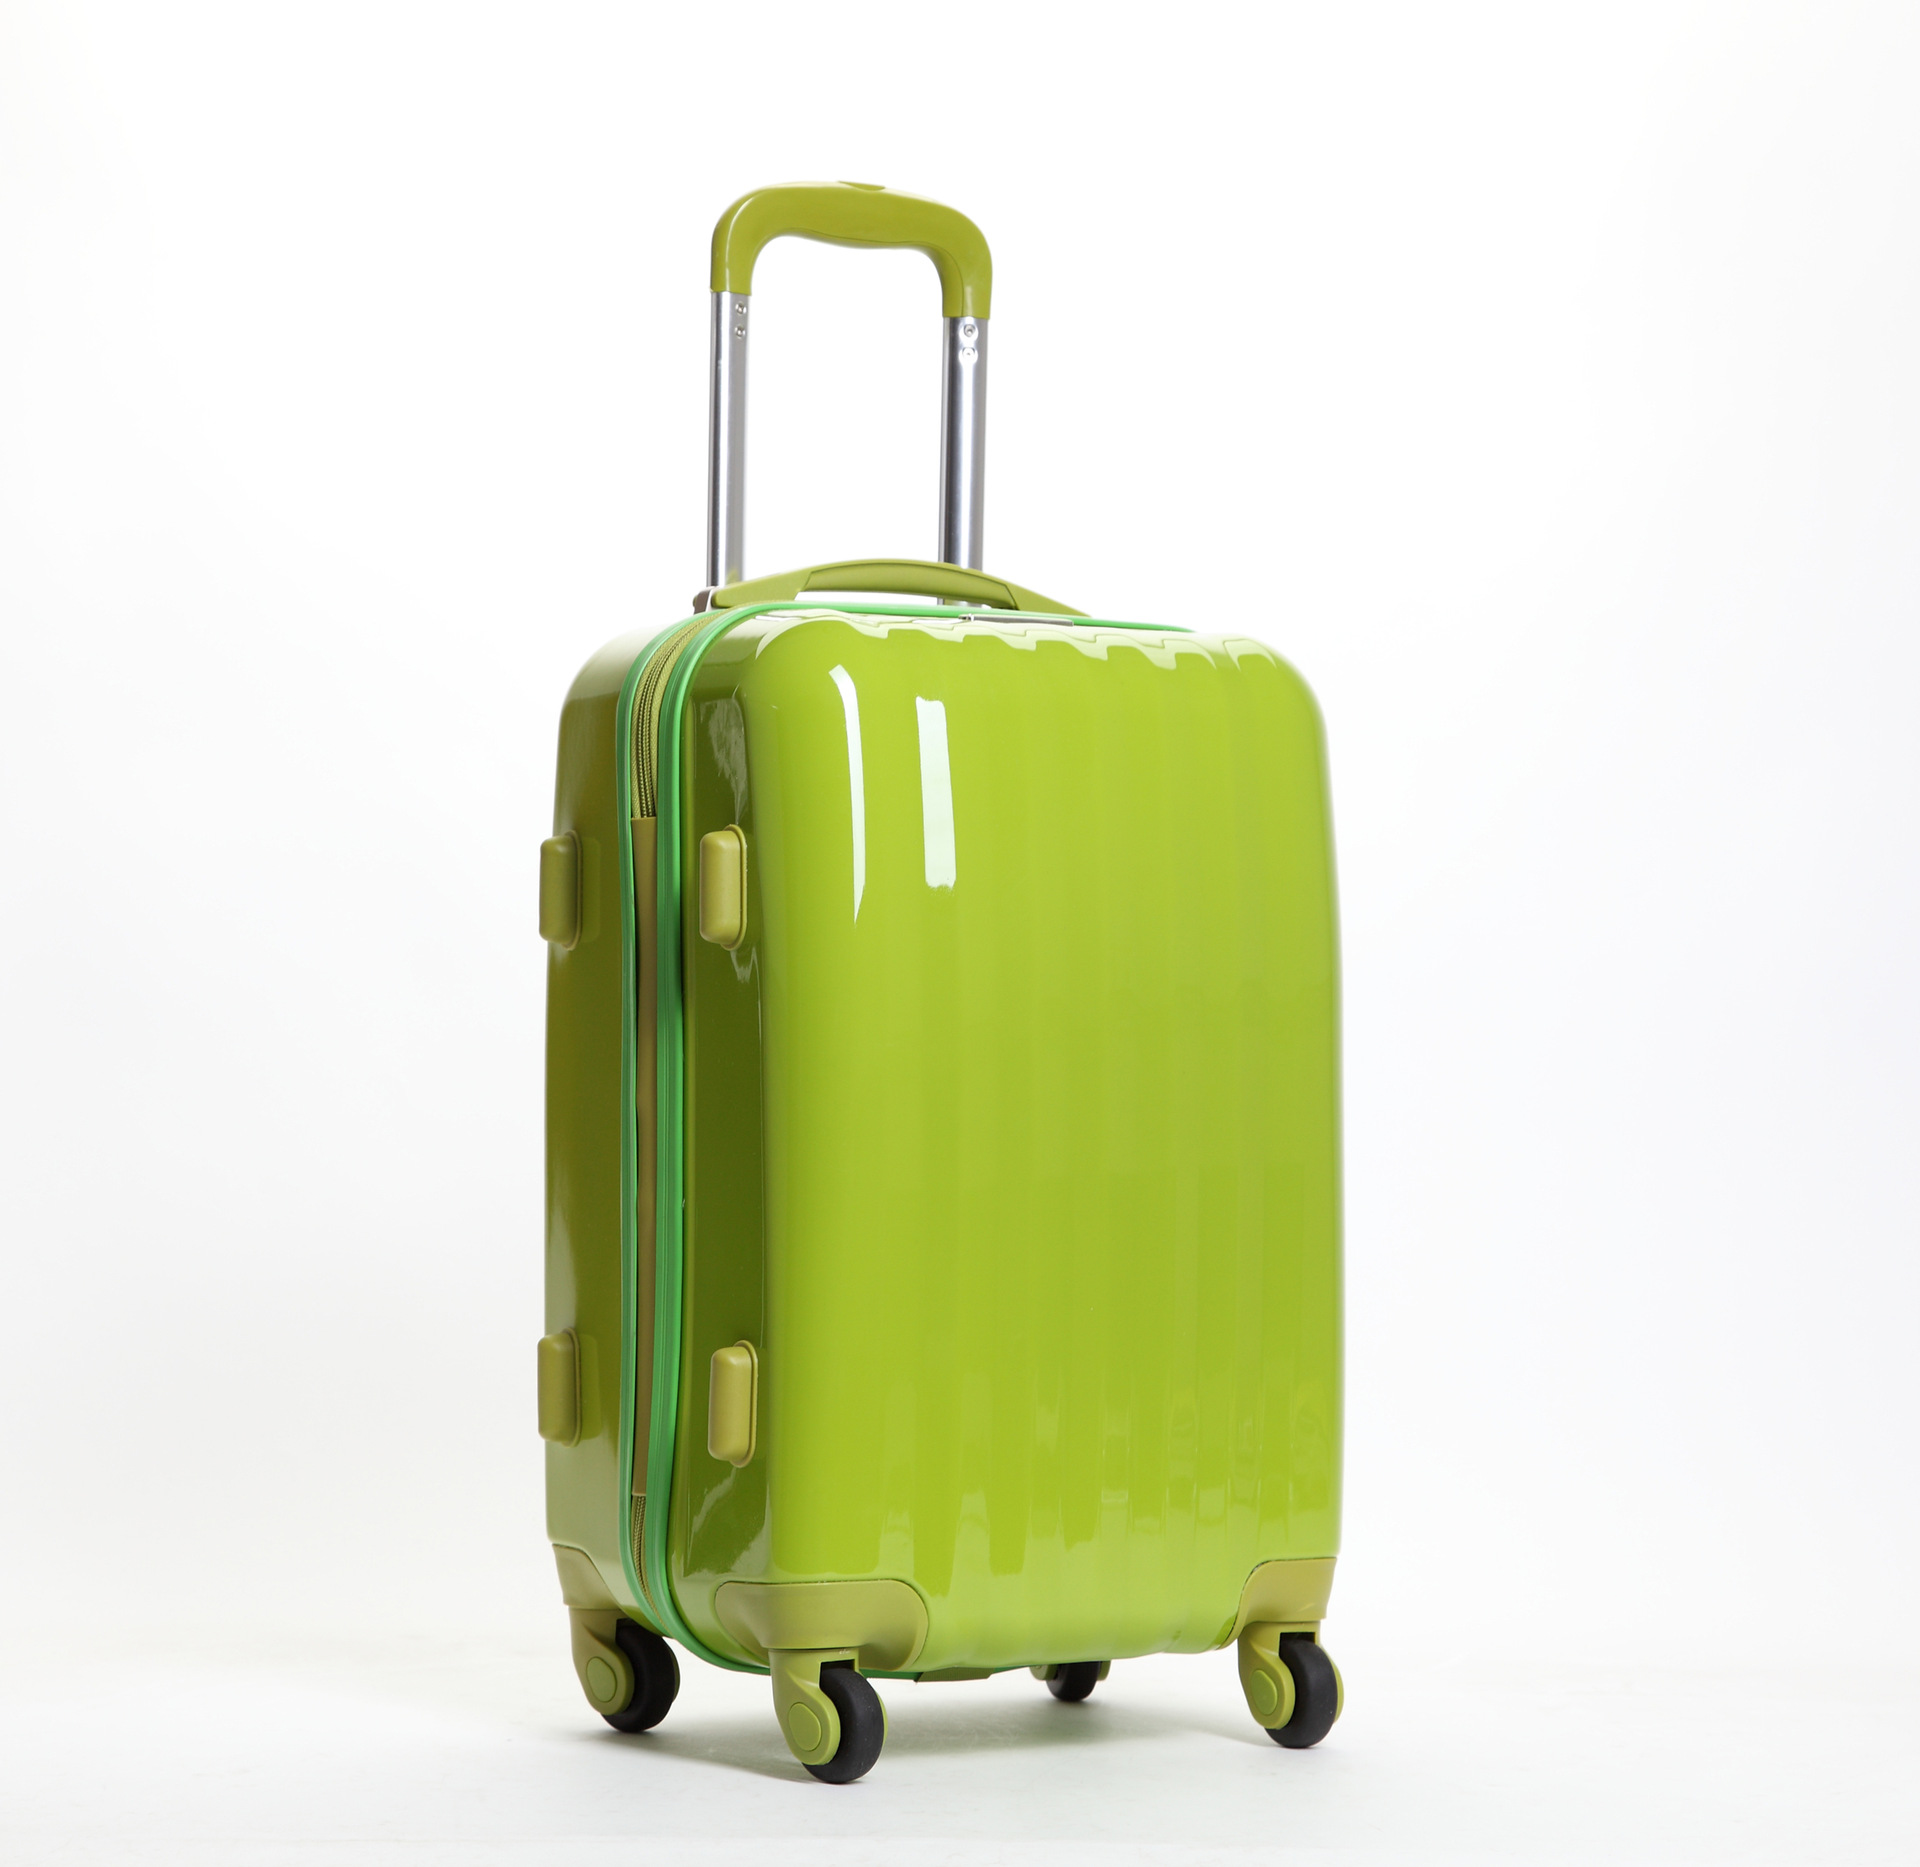 新秀丽拉杆箱时尚条纹旅行箱20寸干湿分离可扩展万向轮登机行李箱-淘宝网